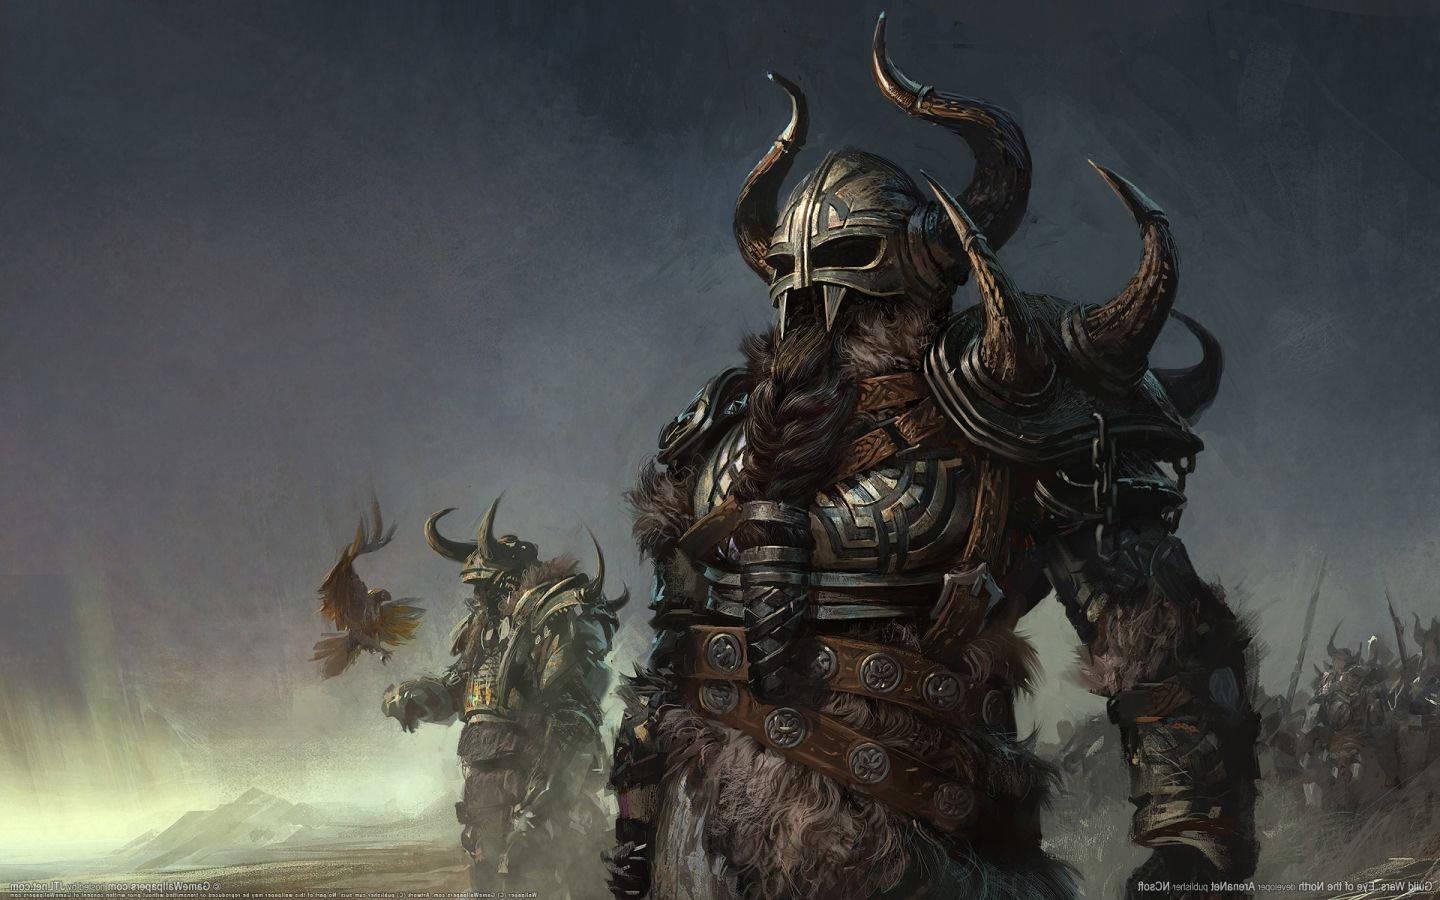 Armor-clad Viking Warriors Wallpaper